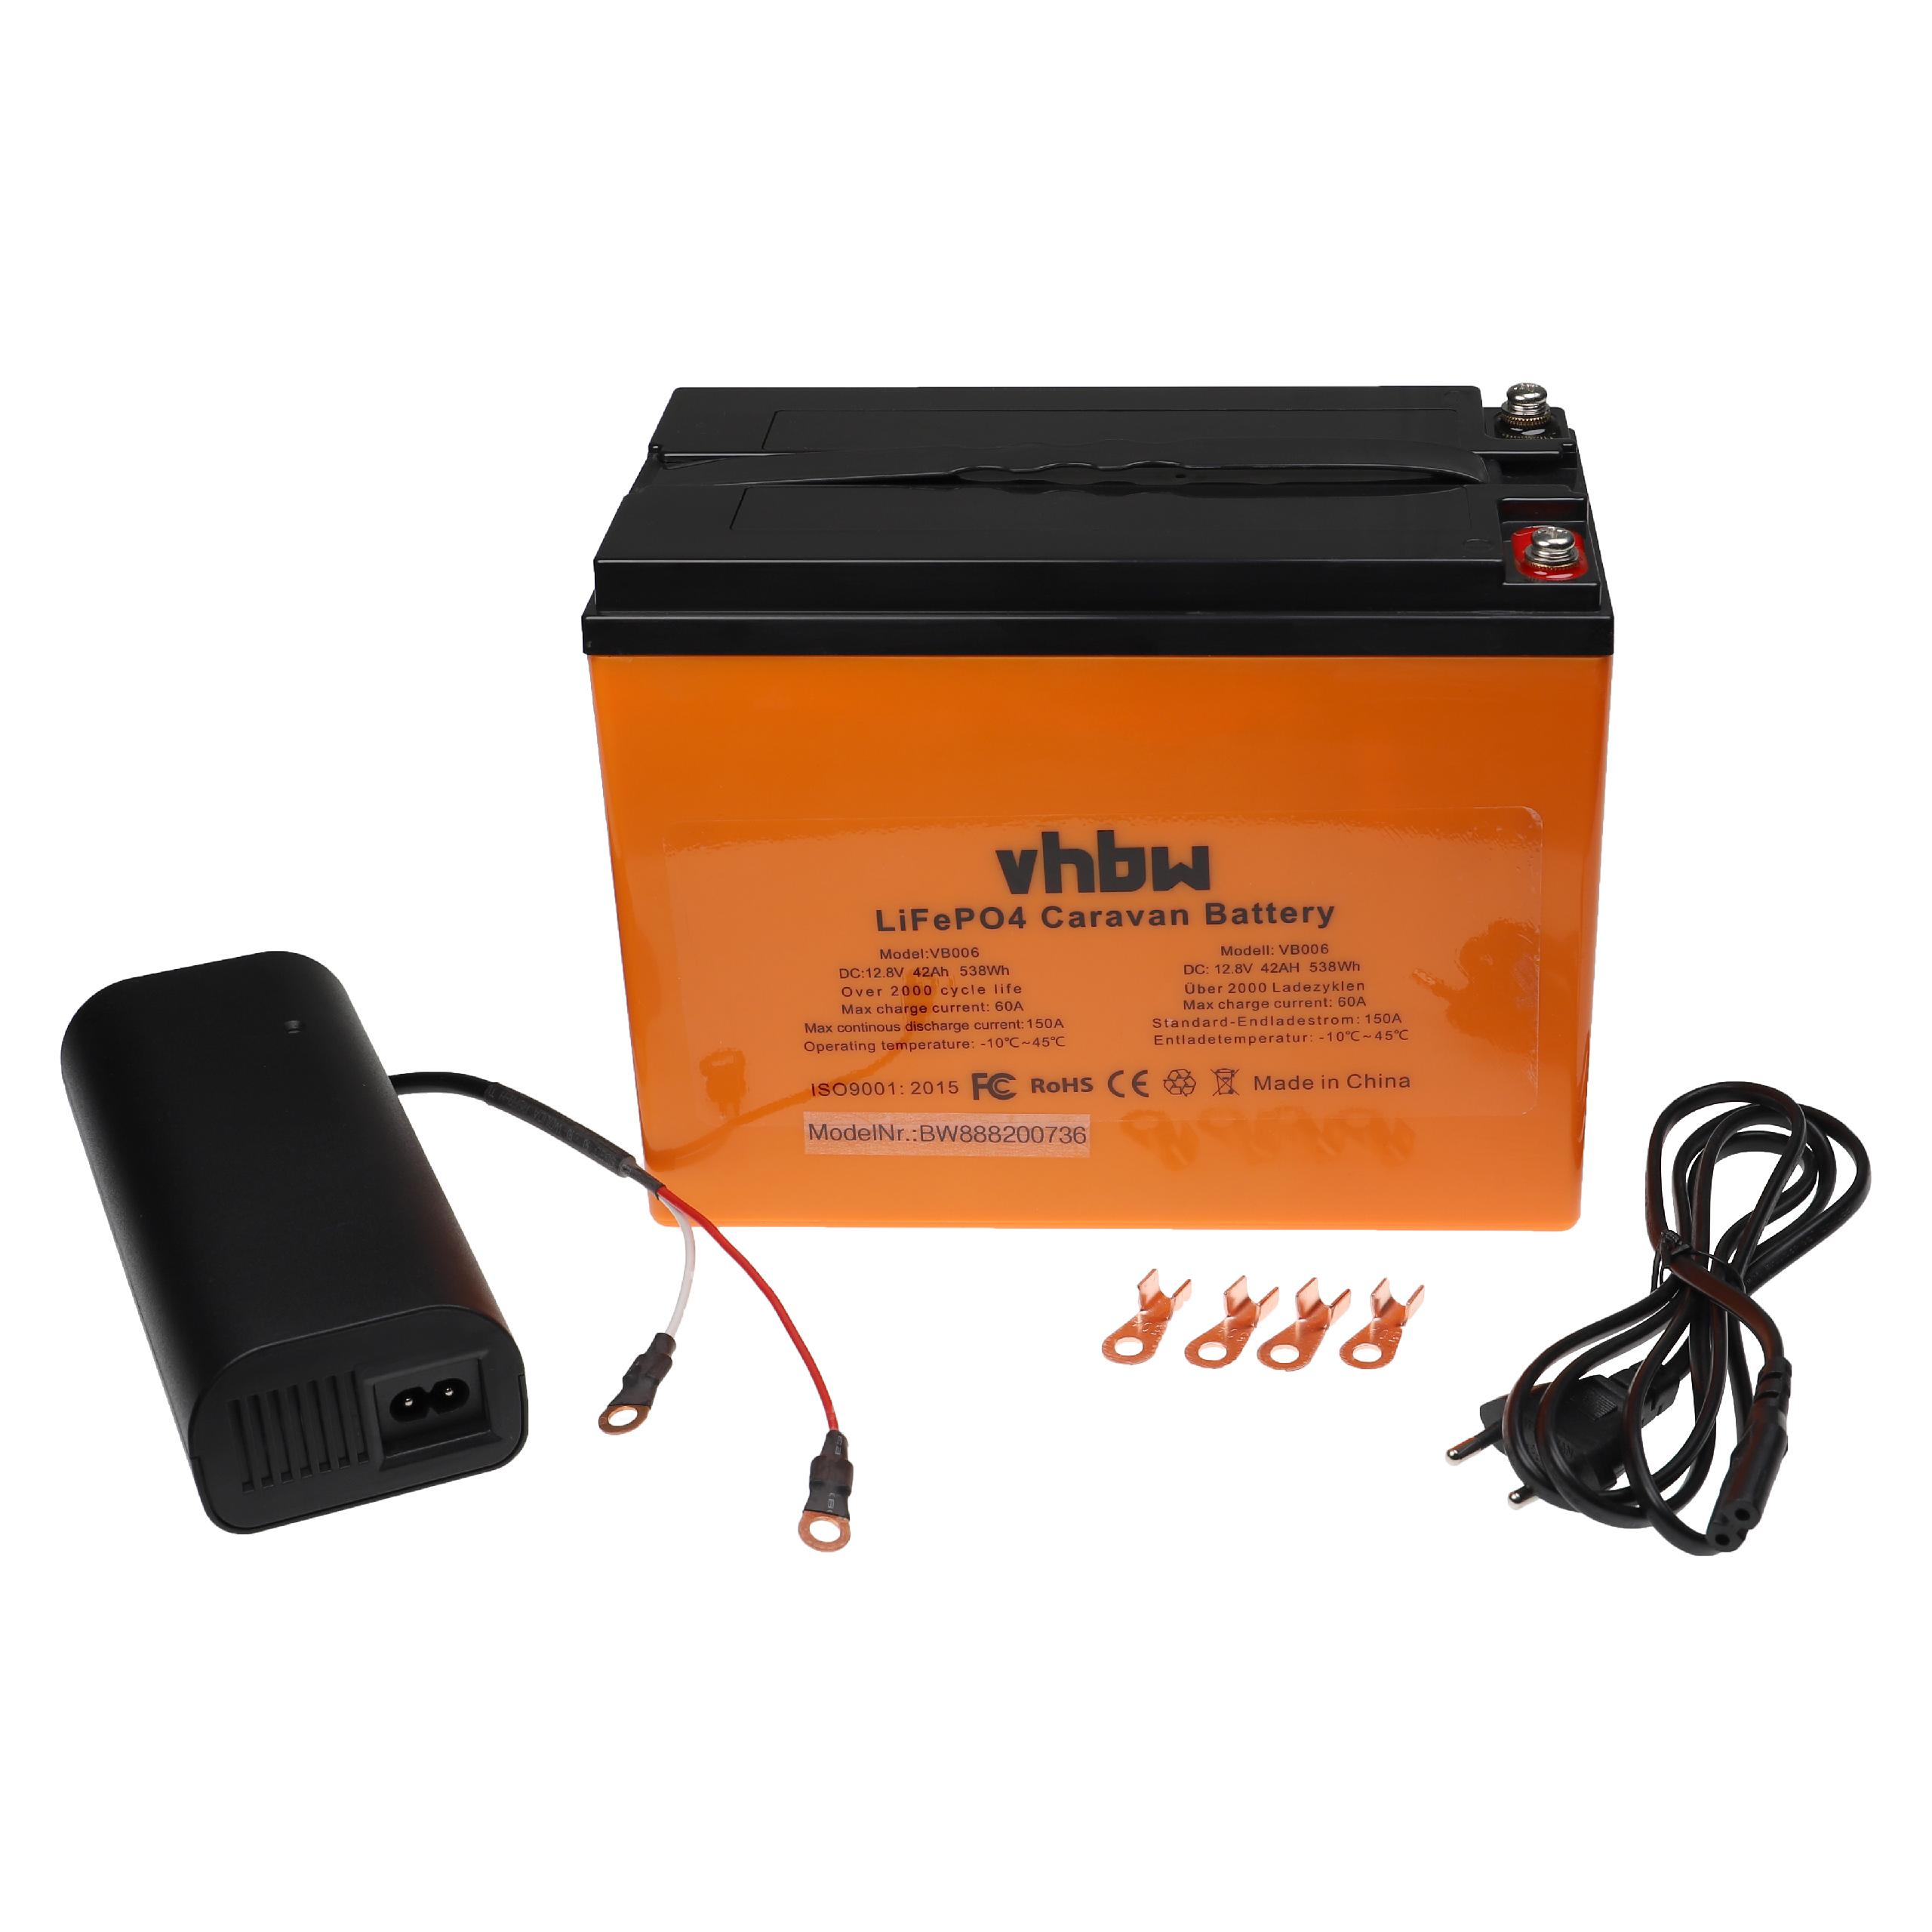 Vhbw batteria per auto per camper, barca, campeggio (42Ah, 12,8V, LiFePO4)  + caricabatterie